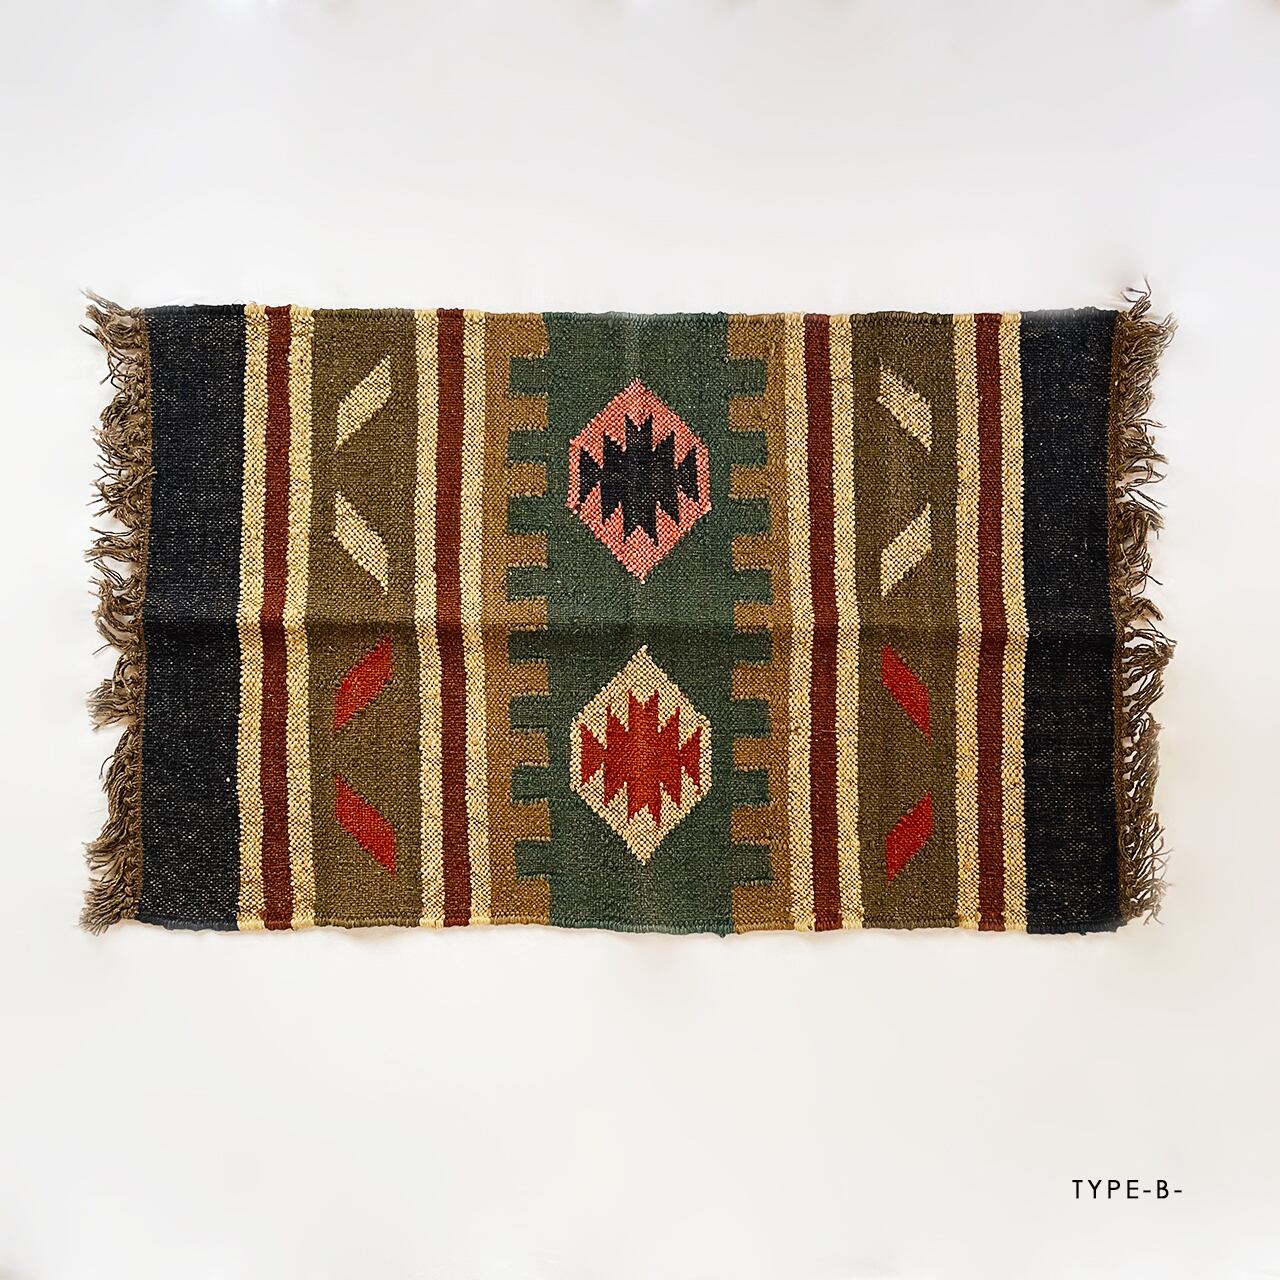 Autumn Jute rugs (Msize)